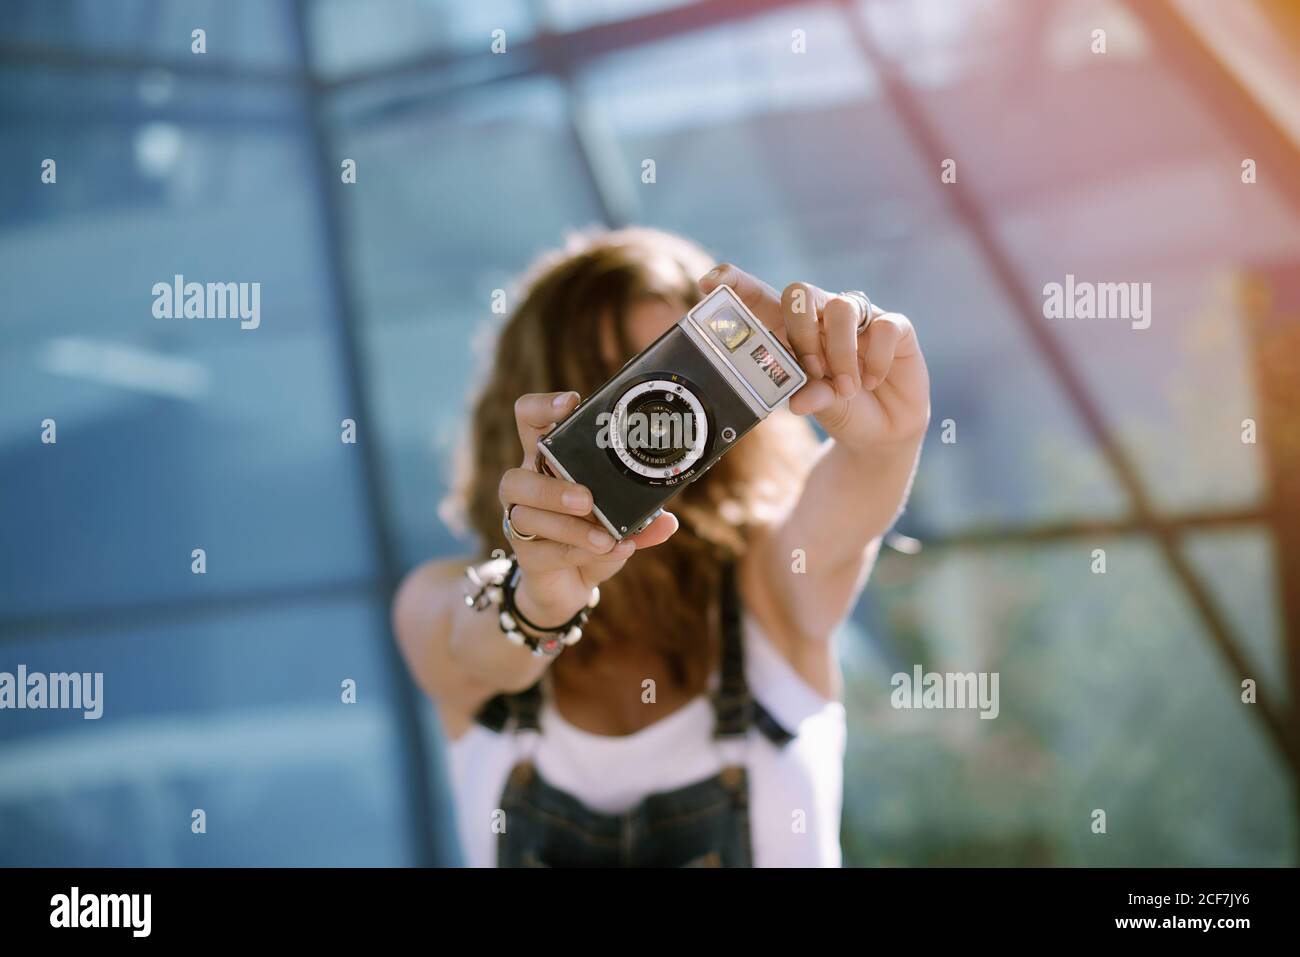 Von oben von jungen unkenntlich weiblich halten Fotokamera in Ausgestreckte Hände und fotografieren, während man an der Glaswand steht Stockfoto